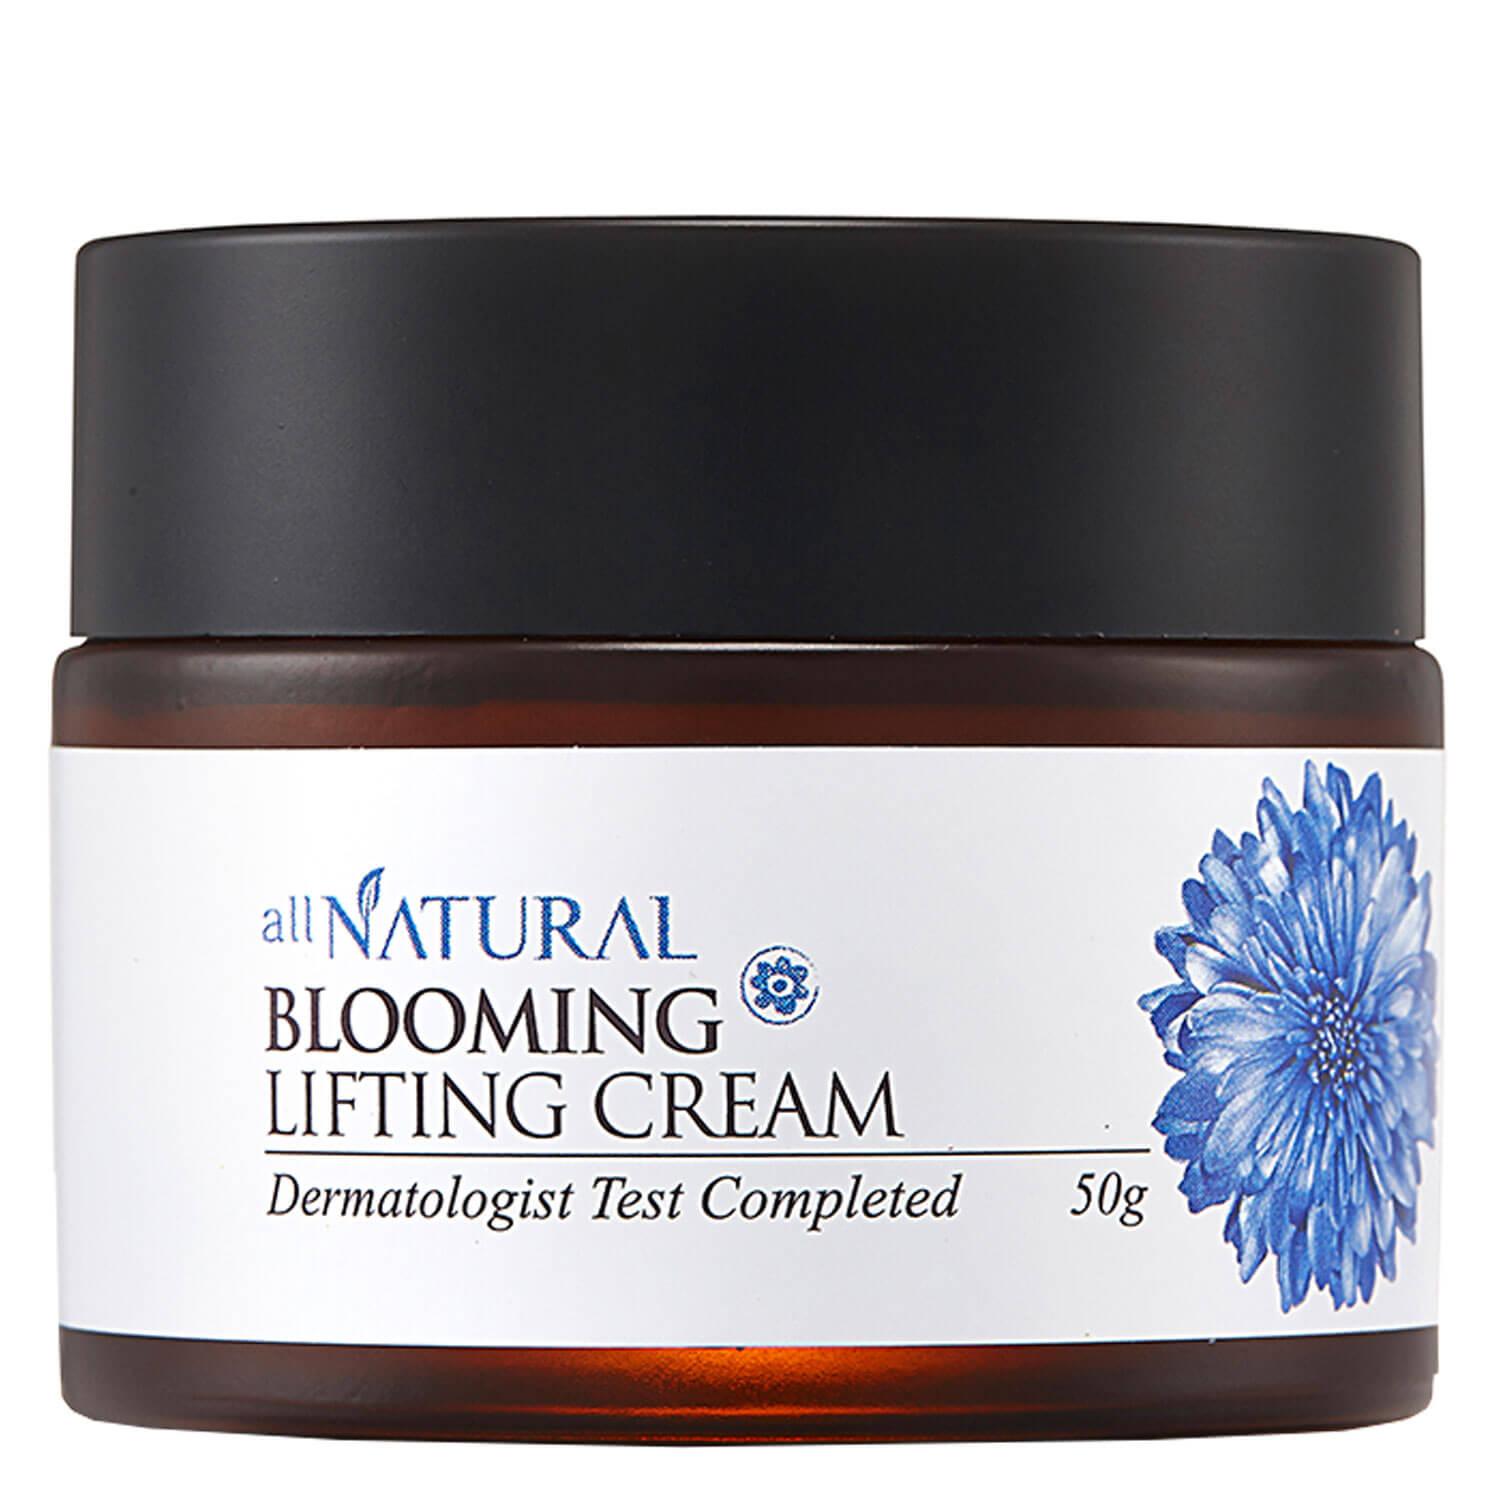 all NATURAL - Blooming Lifting Cream